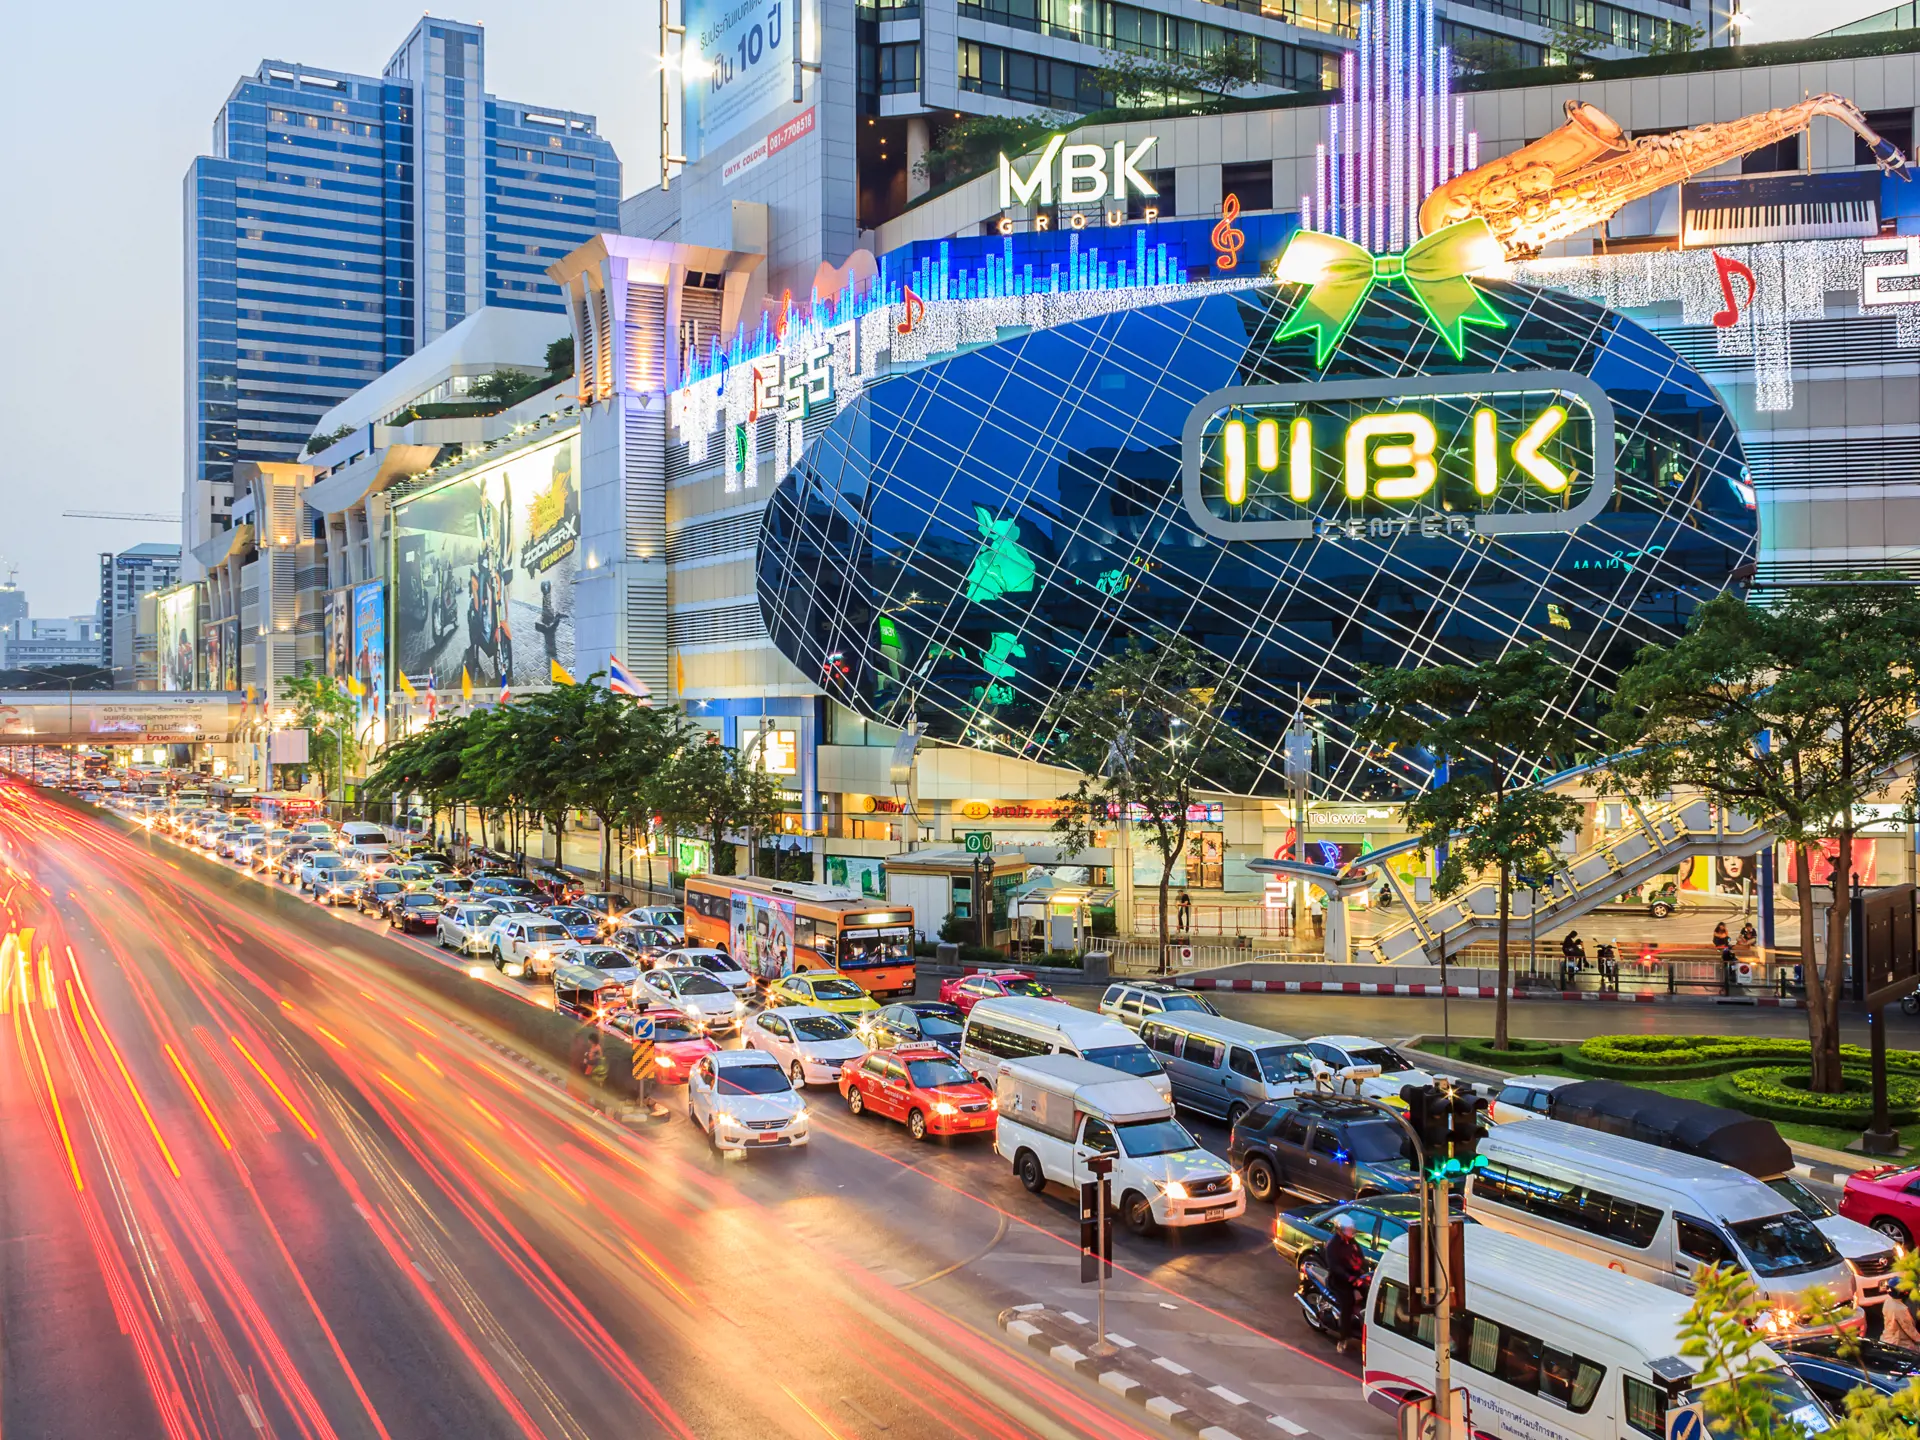 Bangkok - MBK's shopping mall at dusk.jpg